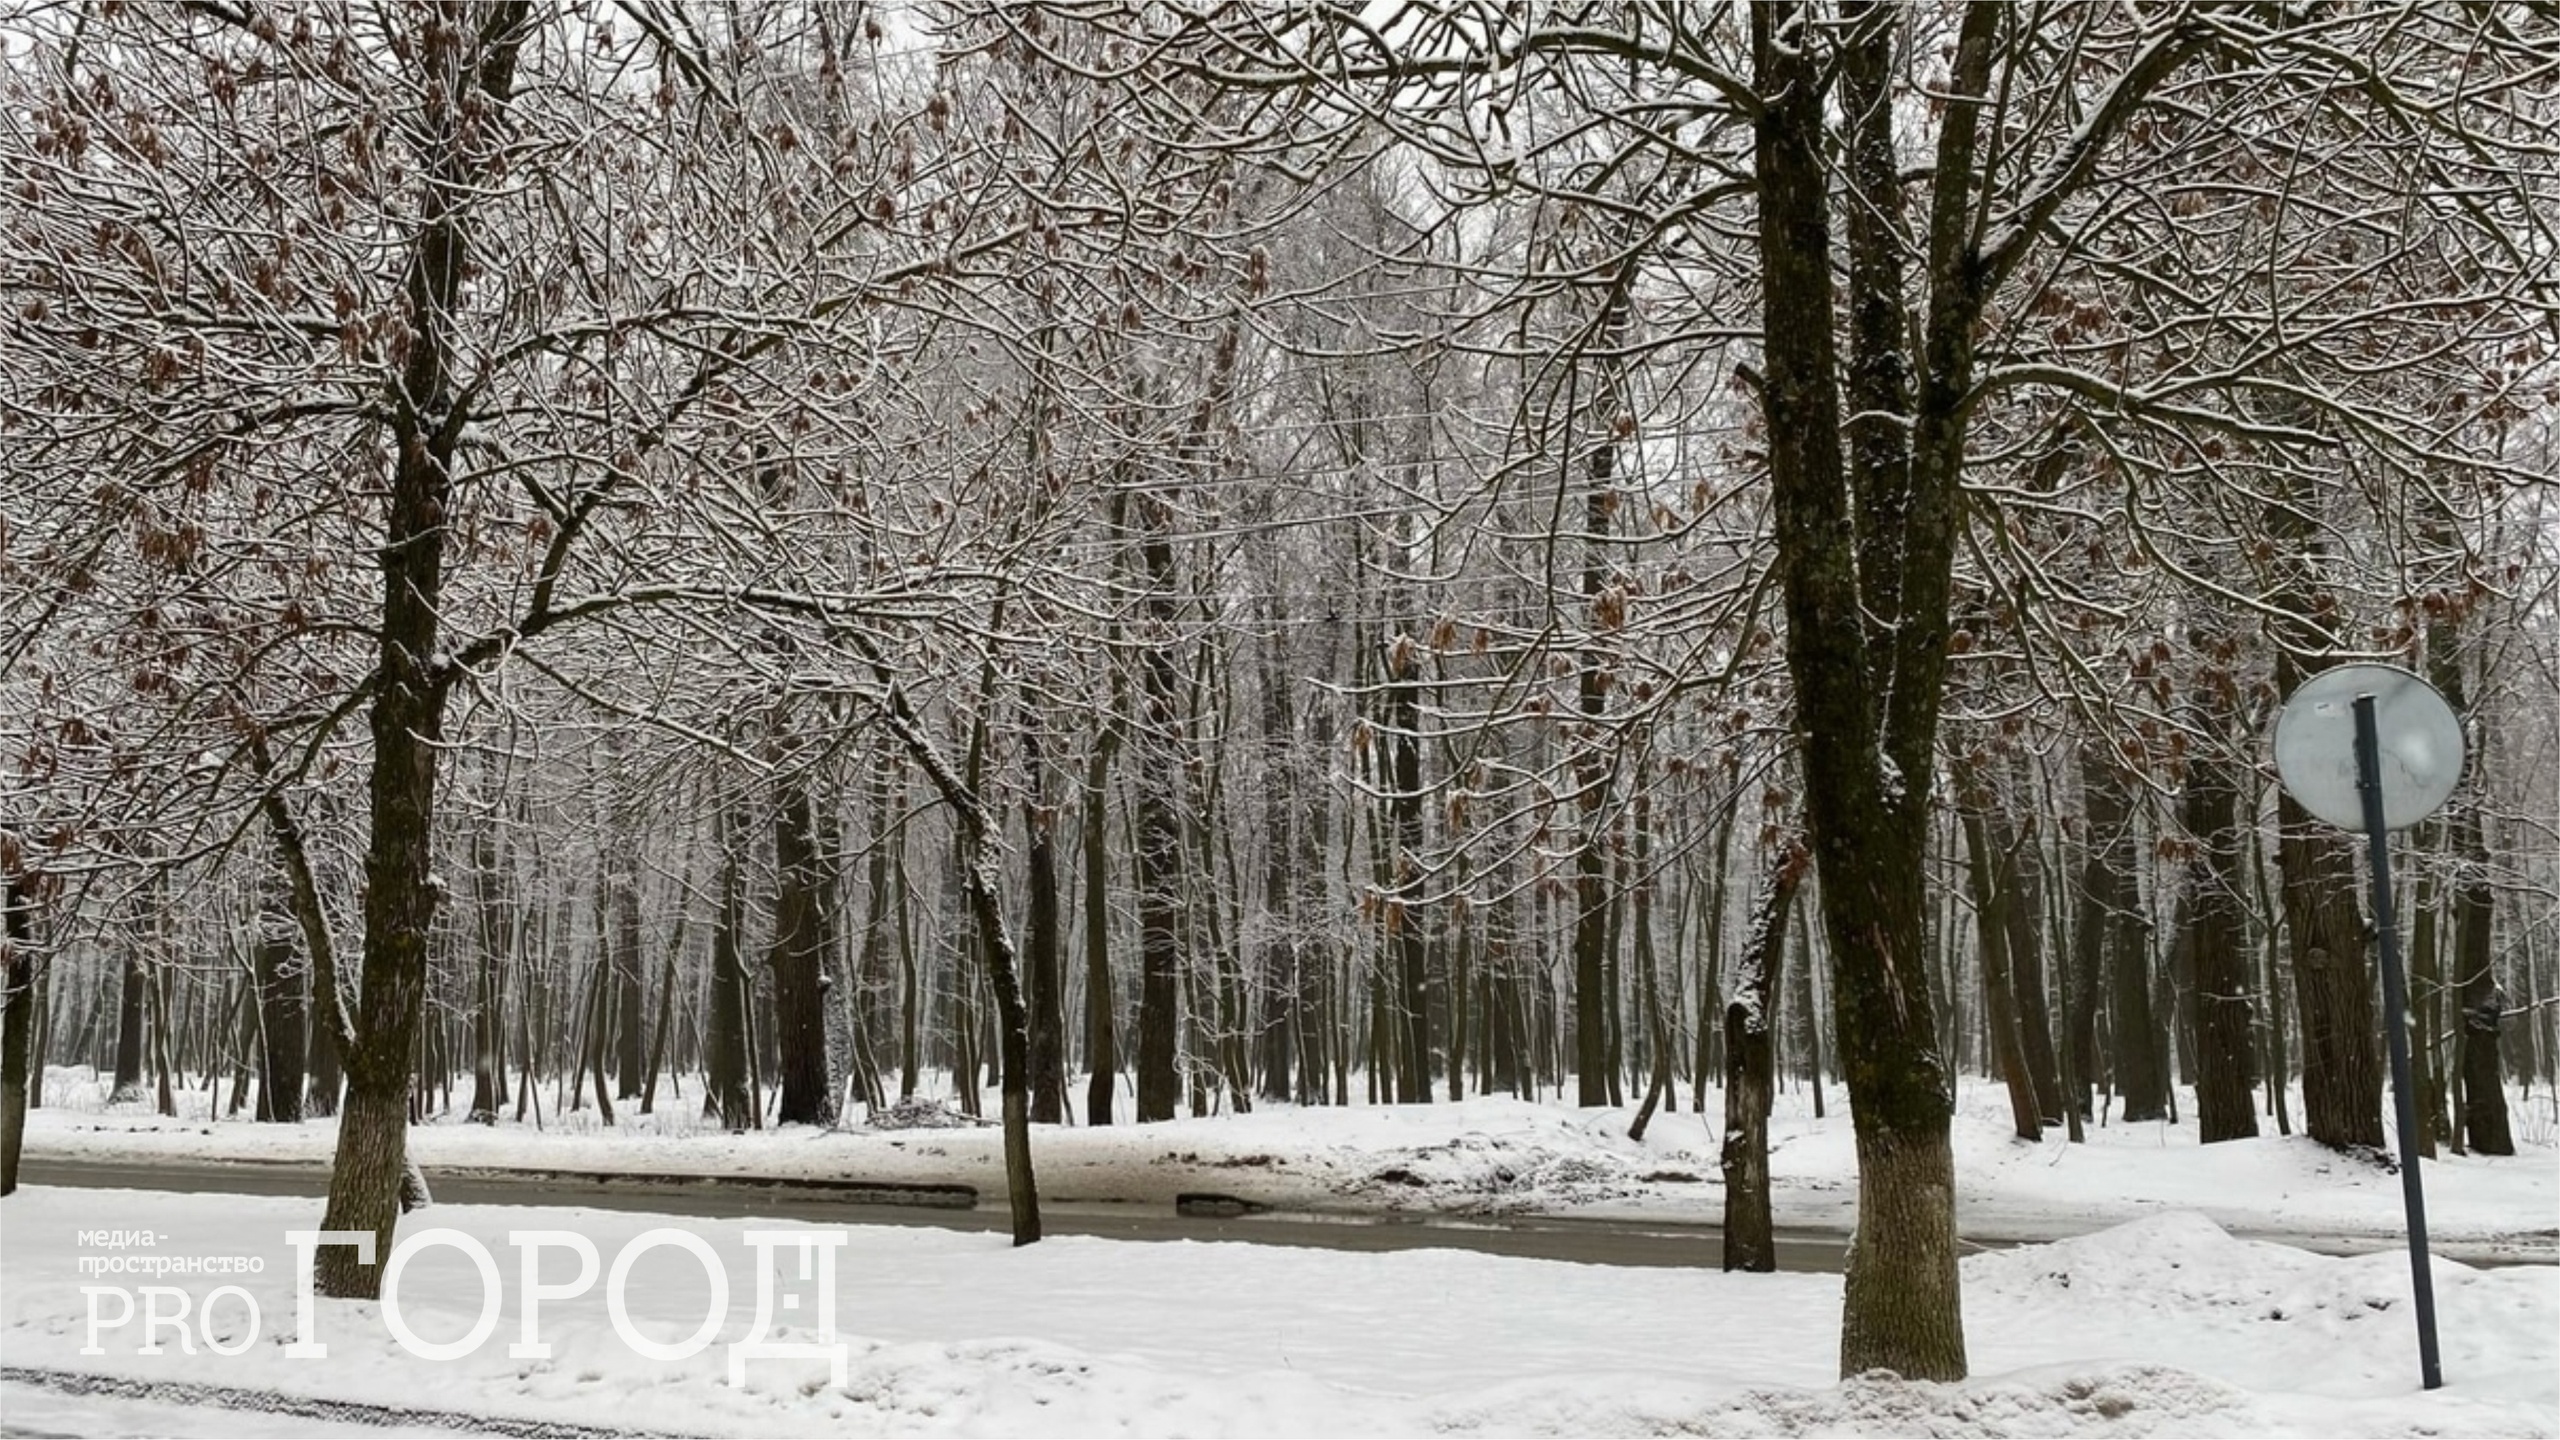 В субботу в Пензенской области пойдет мокрый снег и похолодает до -10